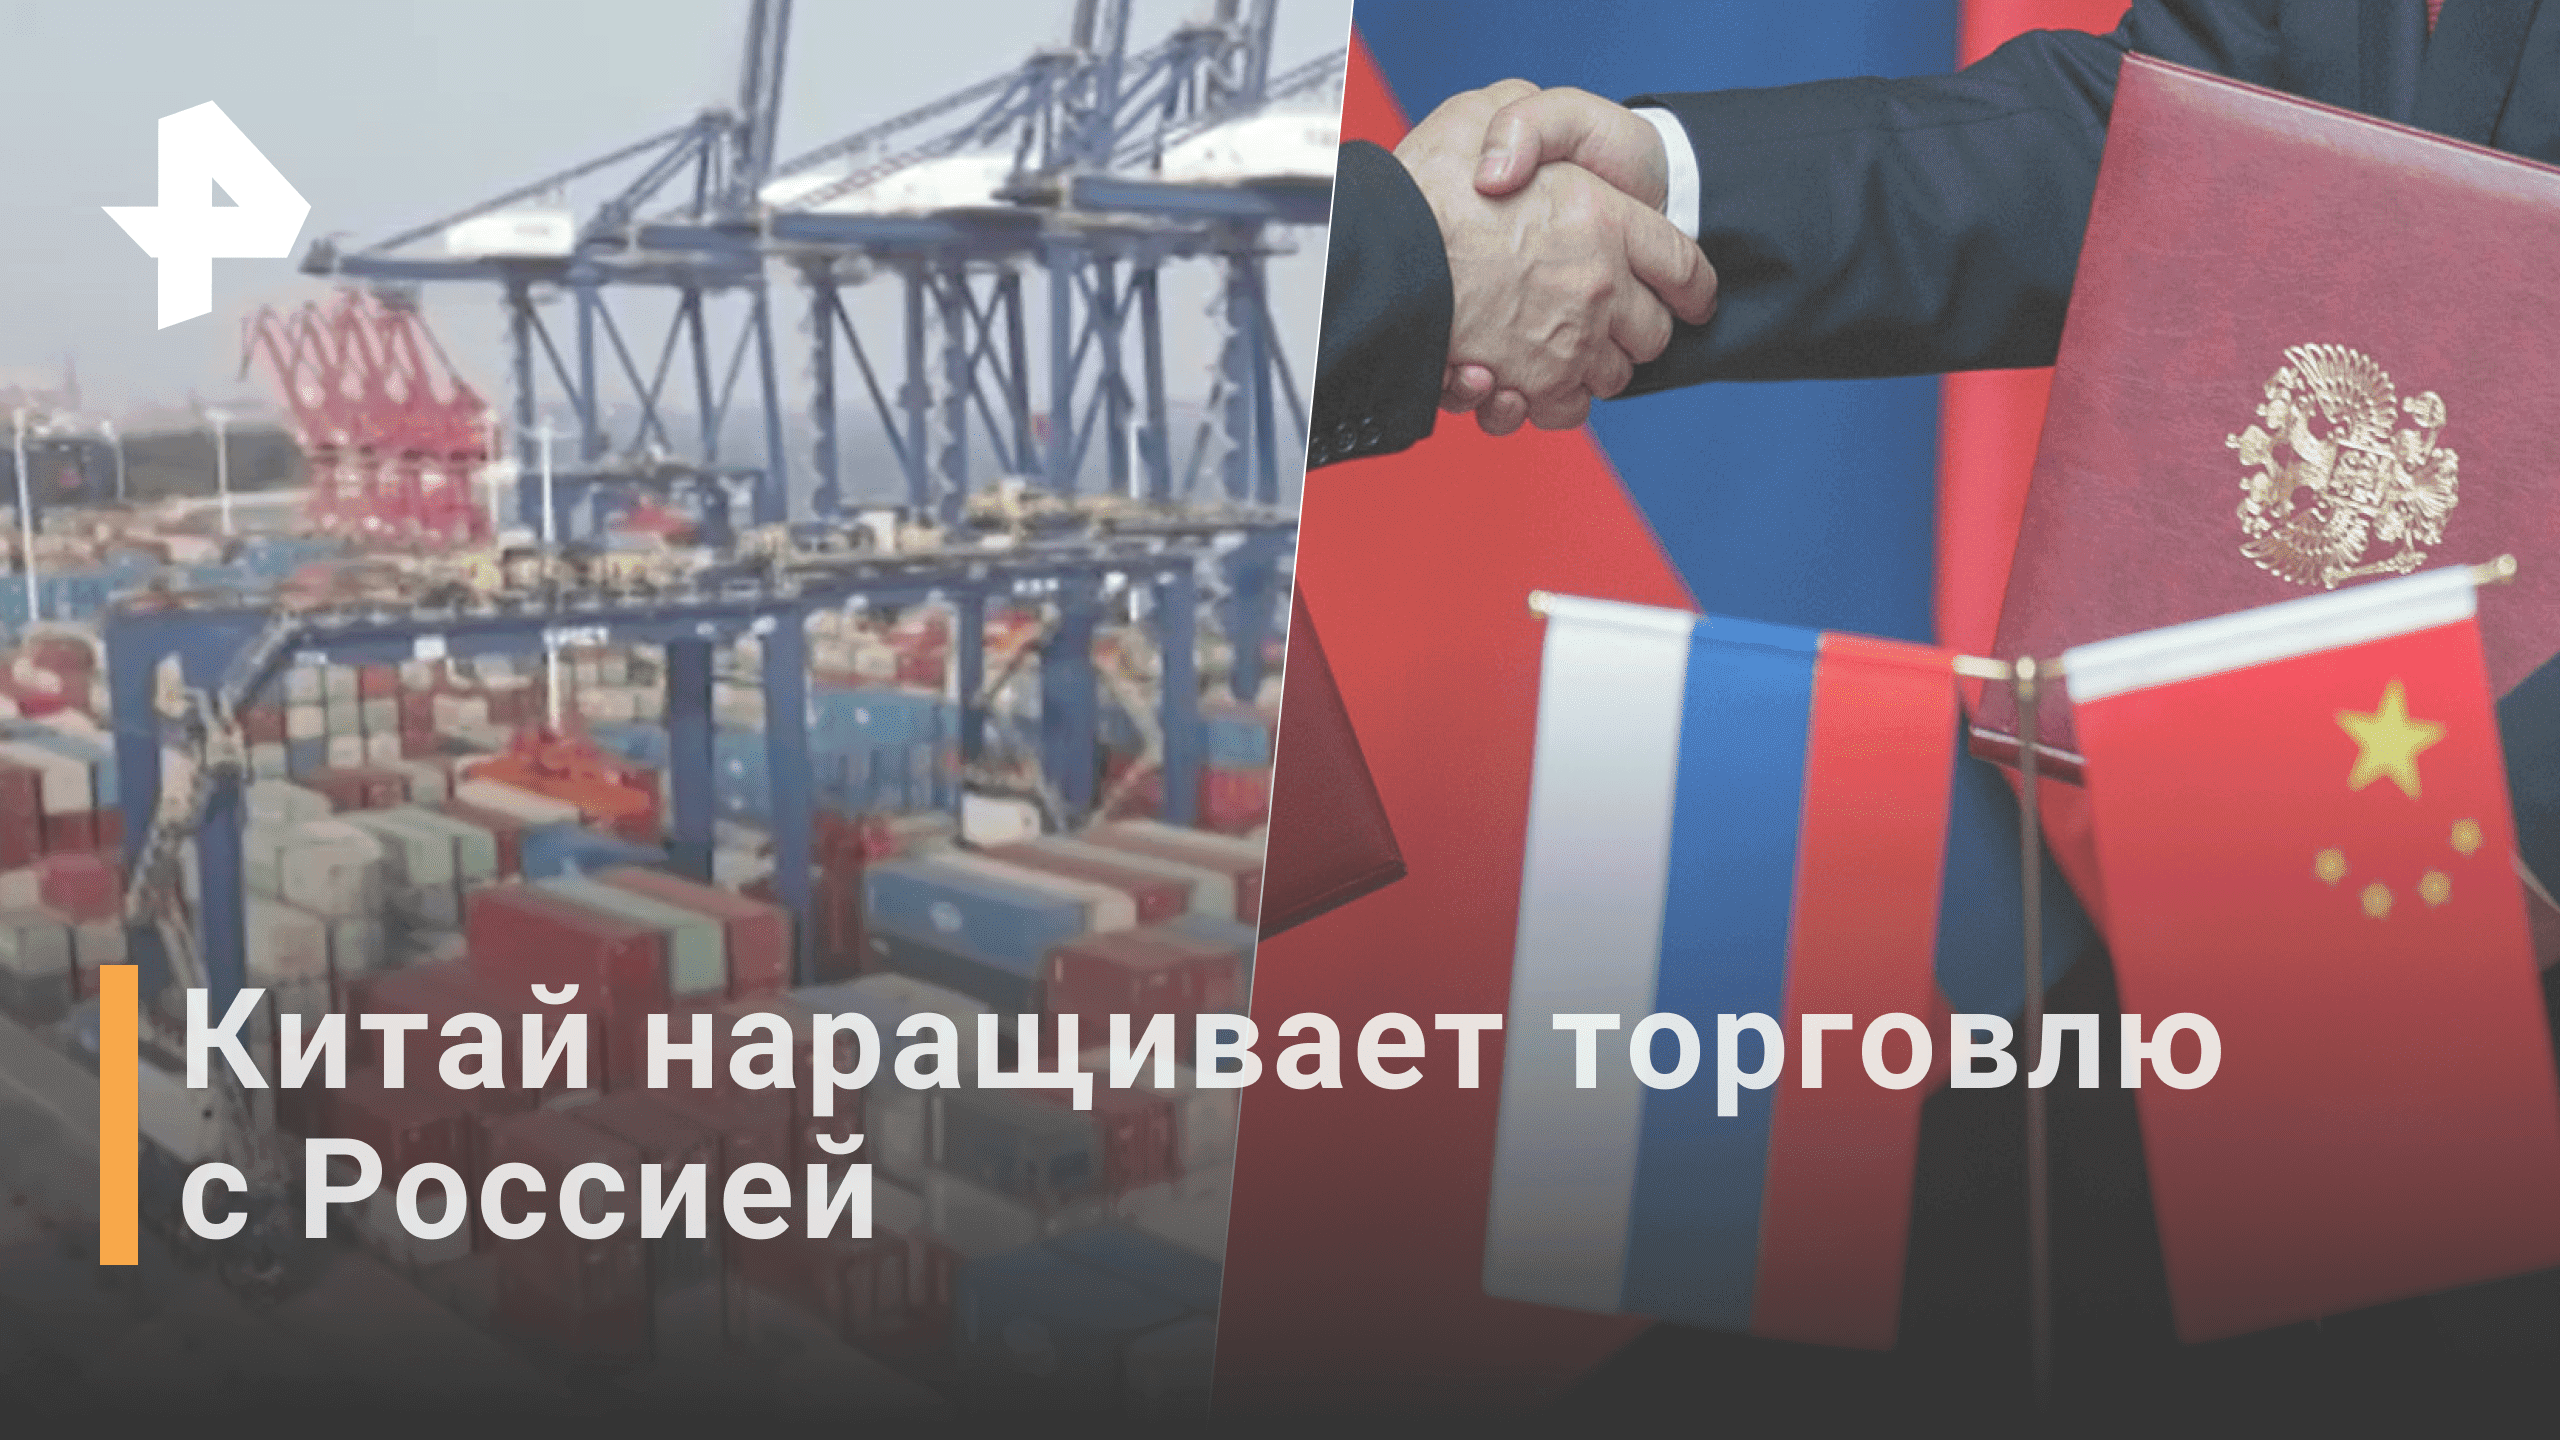 Объемы торговли России с Китаем растут вопреки санкциям / РЕН Новости